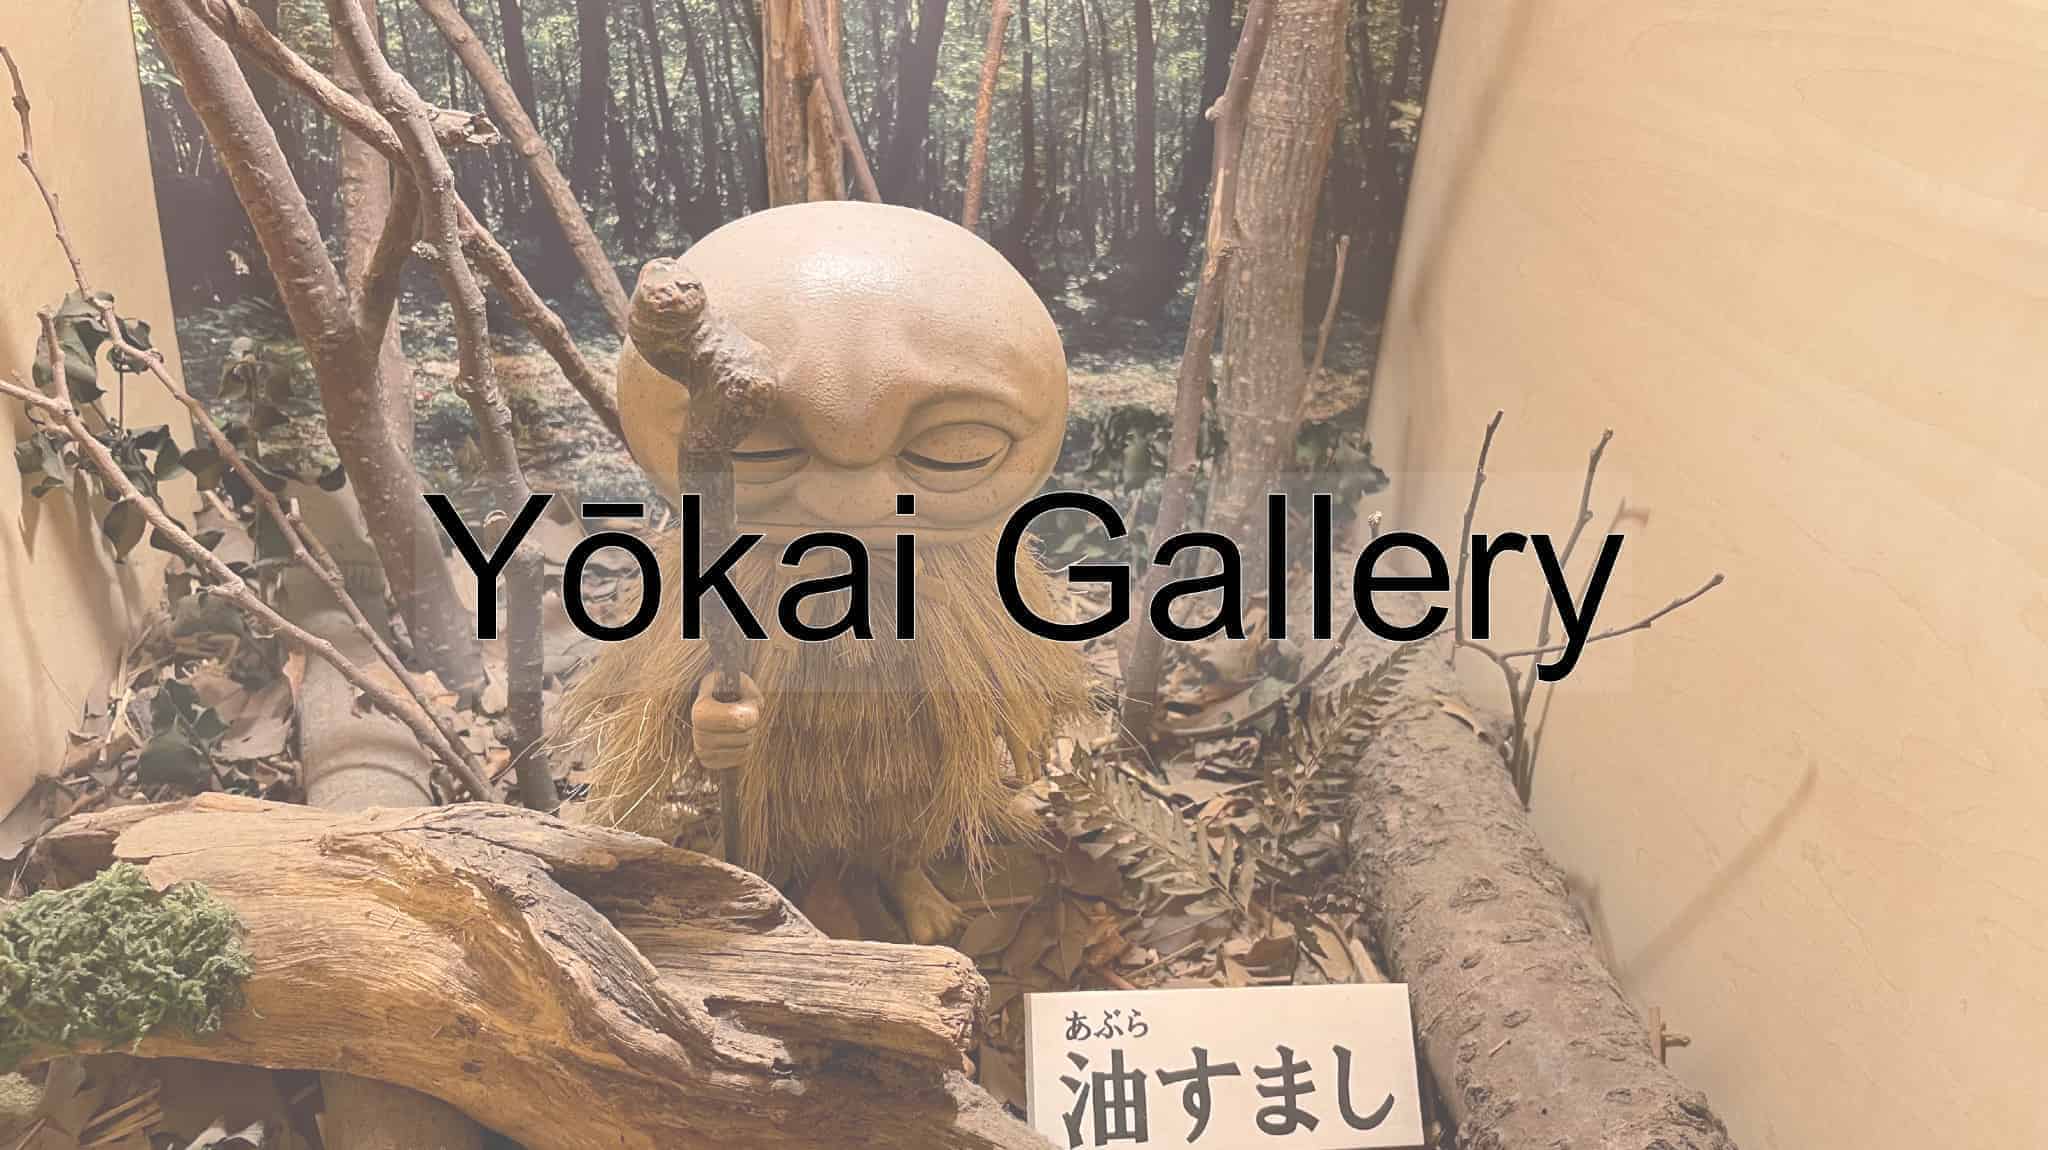 Yokai Gallery, Yokai, Shigeru Mizuki, GeGeGe no Kitaro, Tokyo, Tokyo Metropolis, Japan